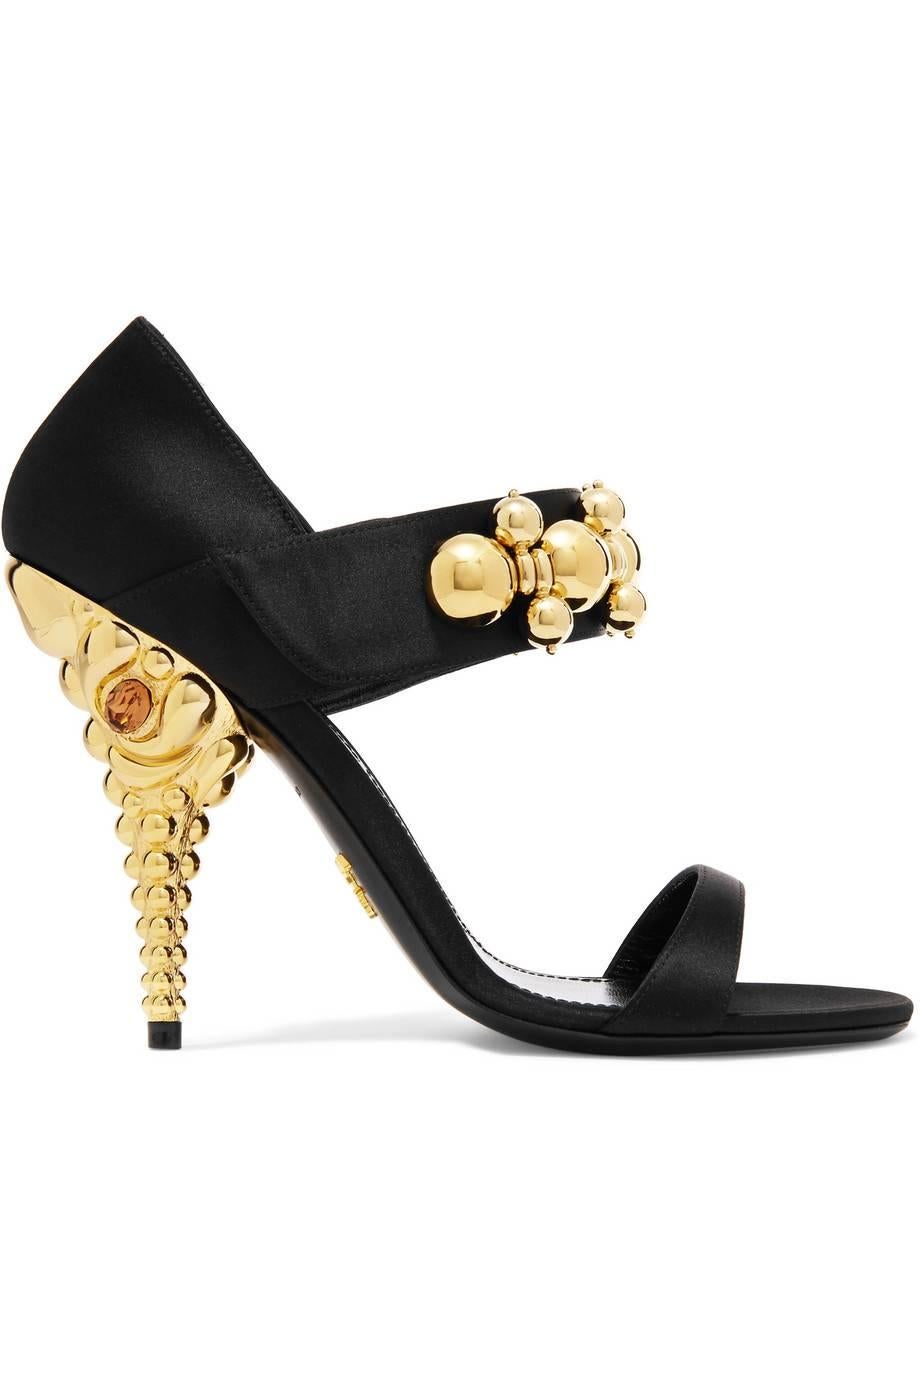 gold ball heels